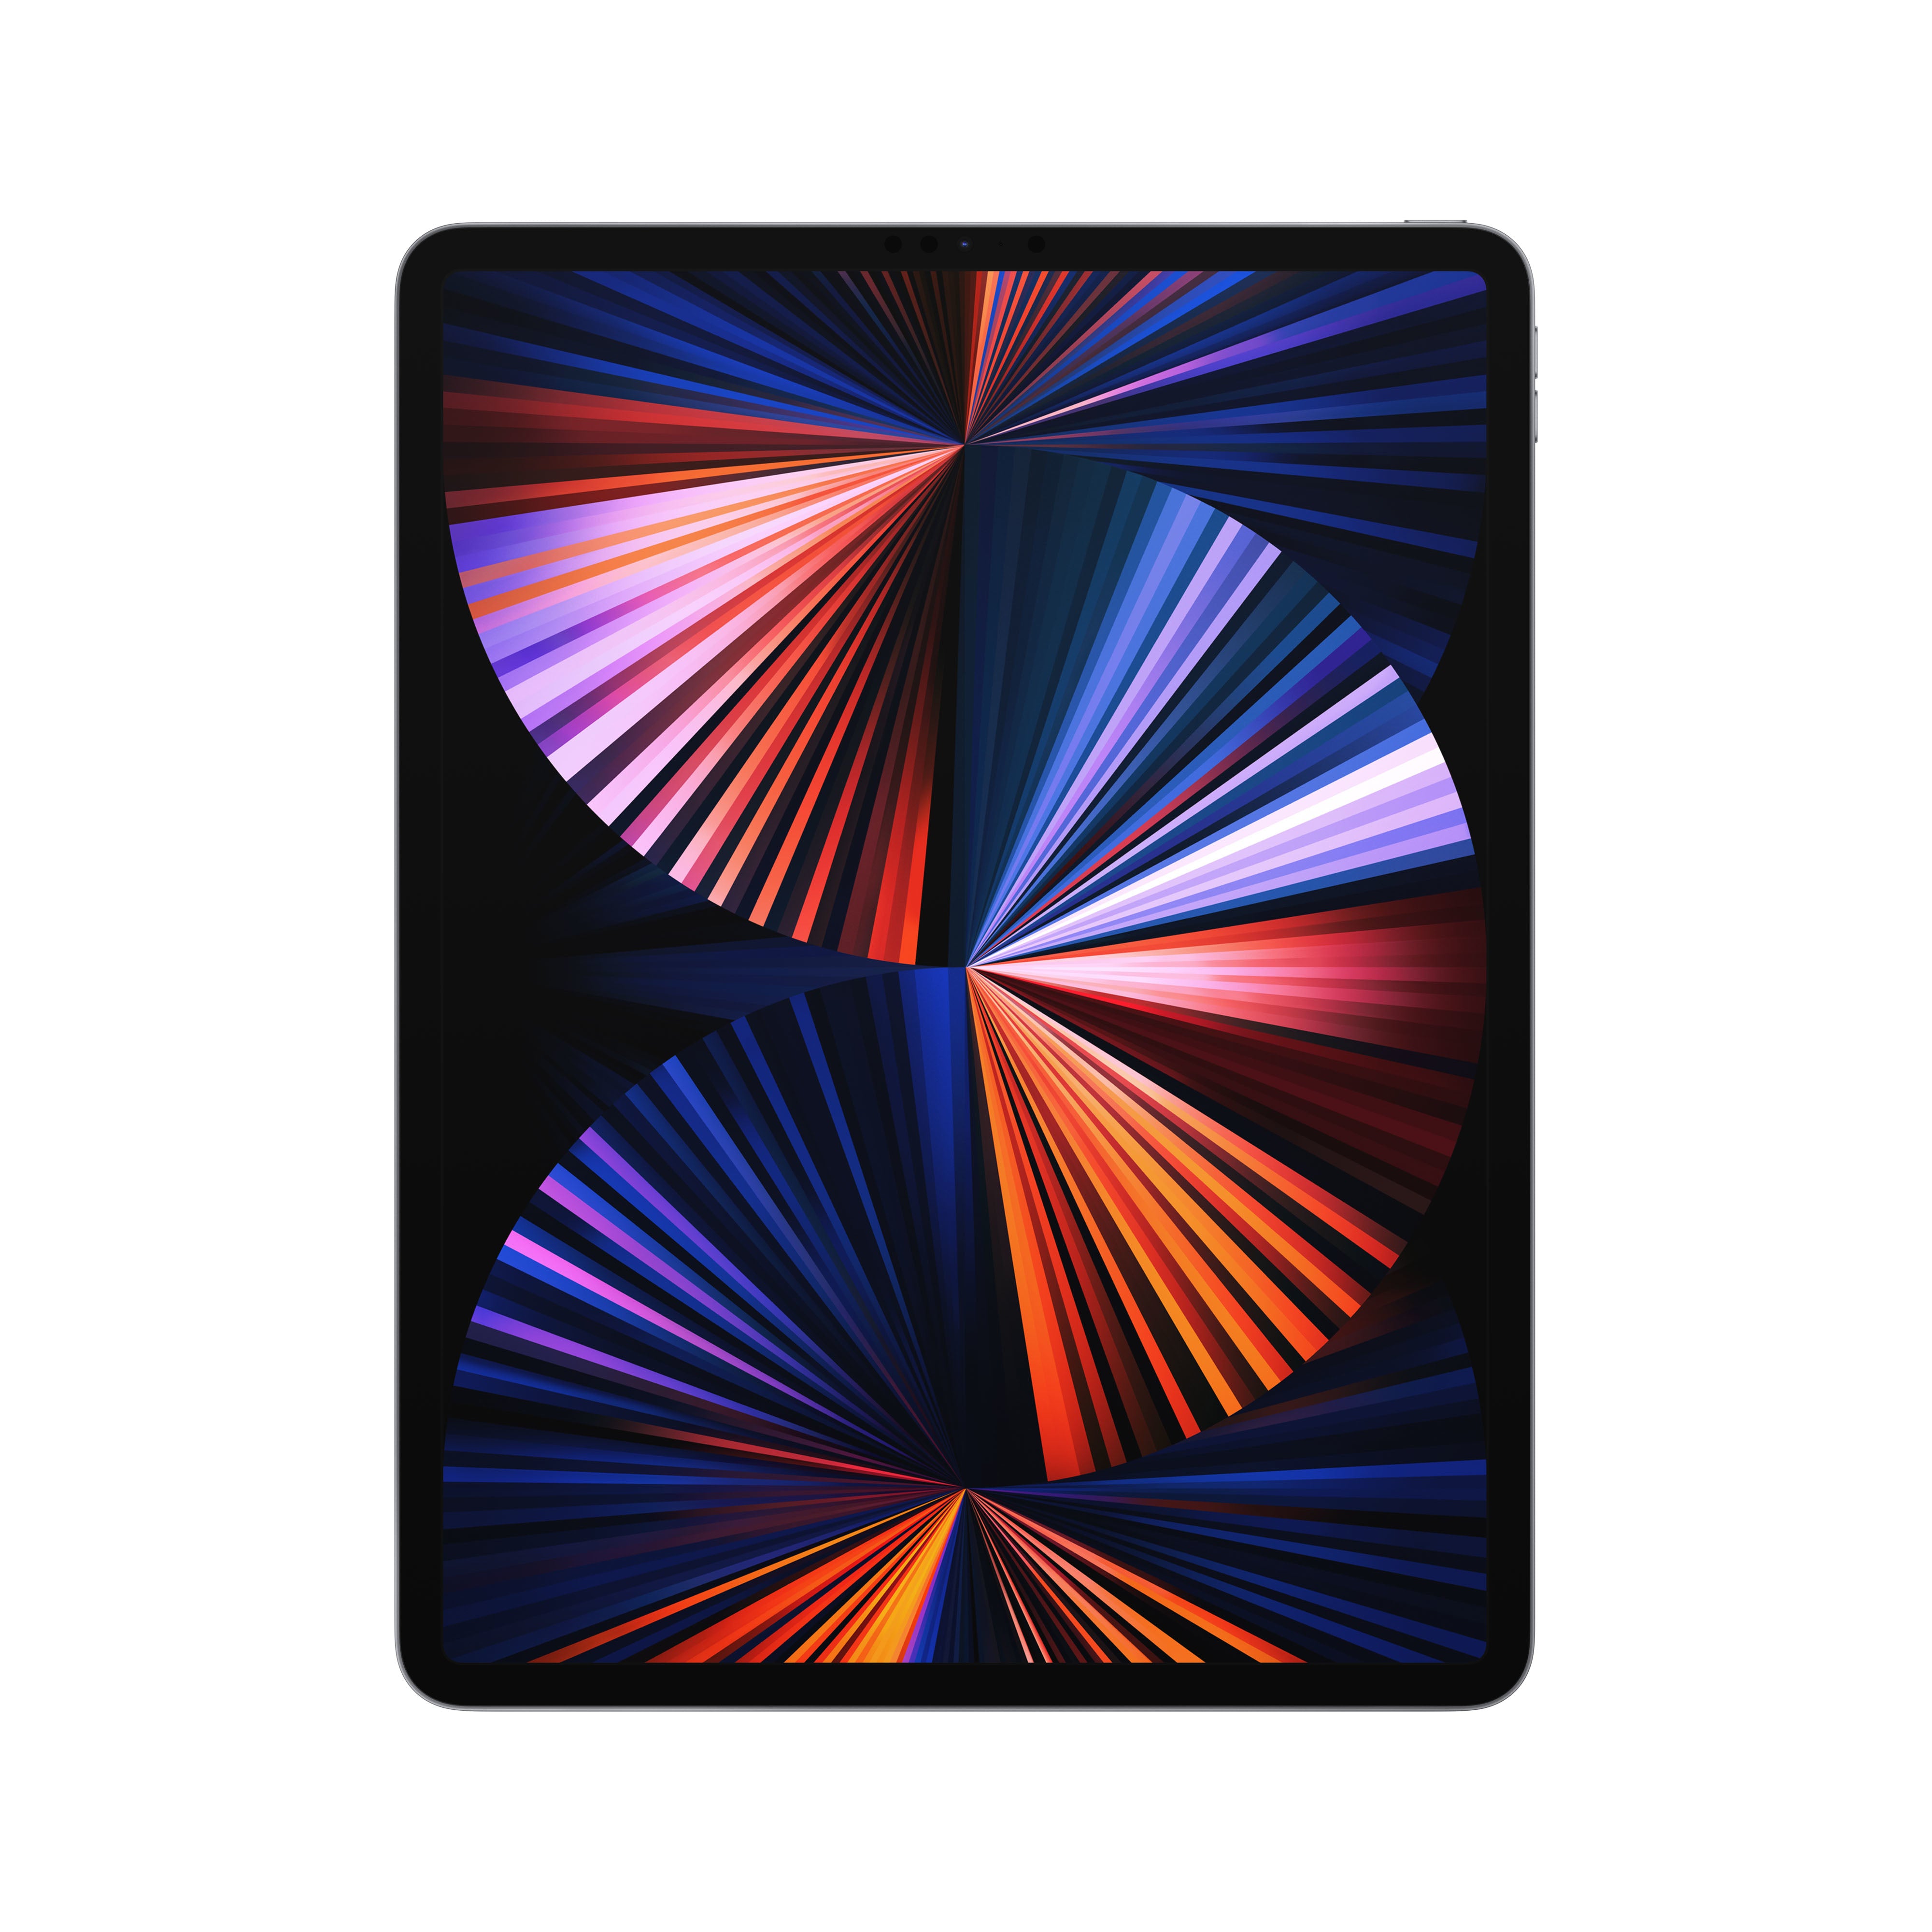 Image of Refurbished iPad Pro 11 inch 2018 64 GB 4G Spacegrijs Als nieuw (Refurbished)